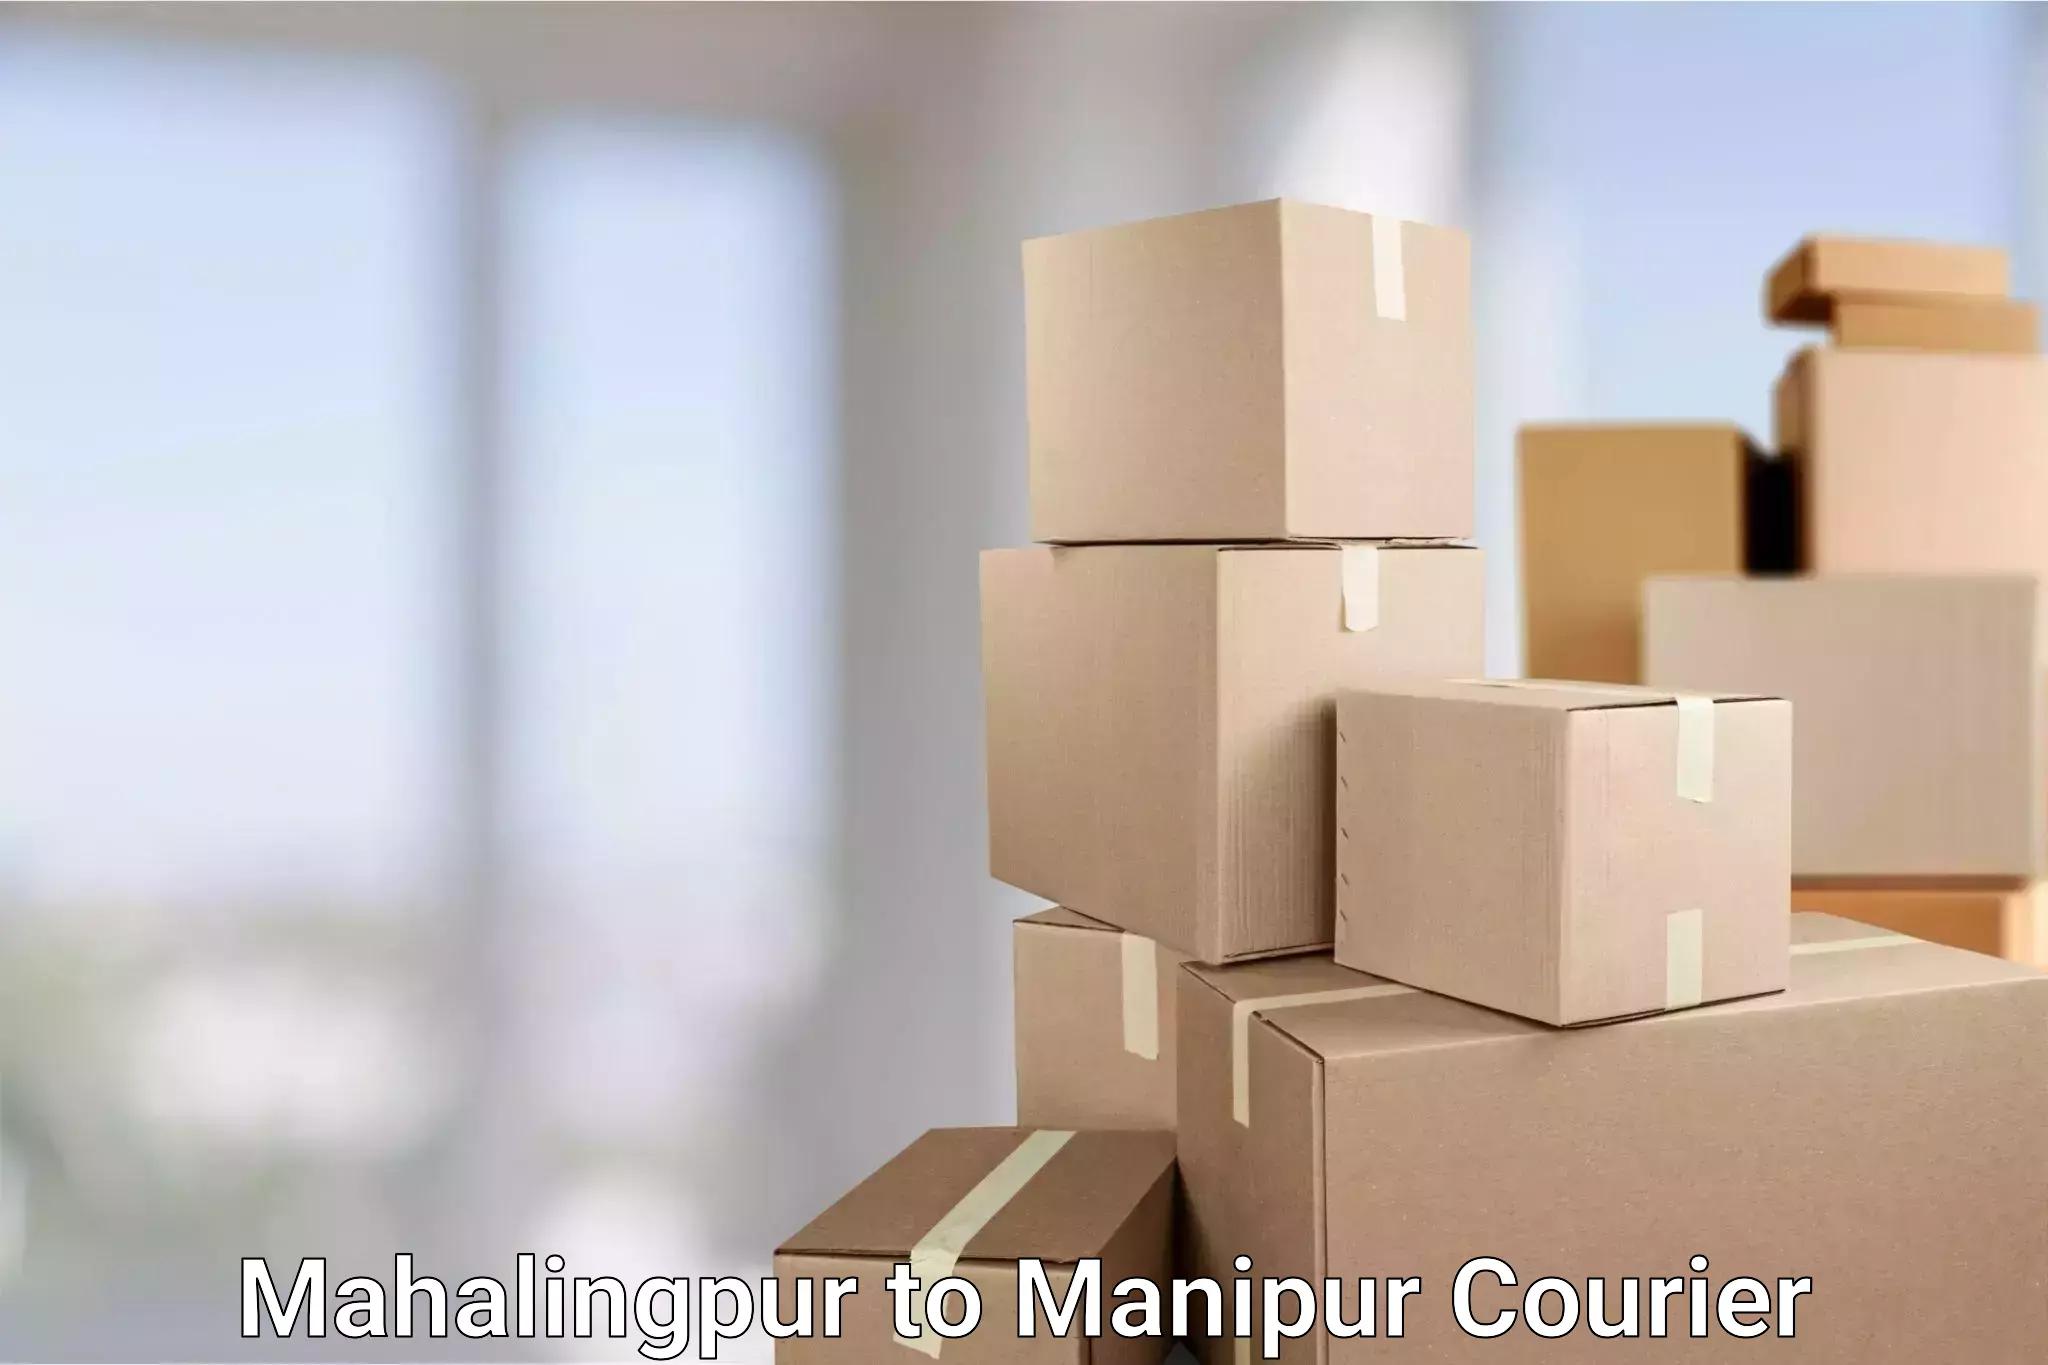 Express courier capabilities Mahalingpur to Tadubi